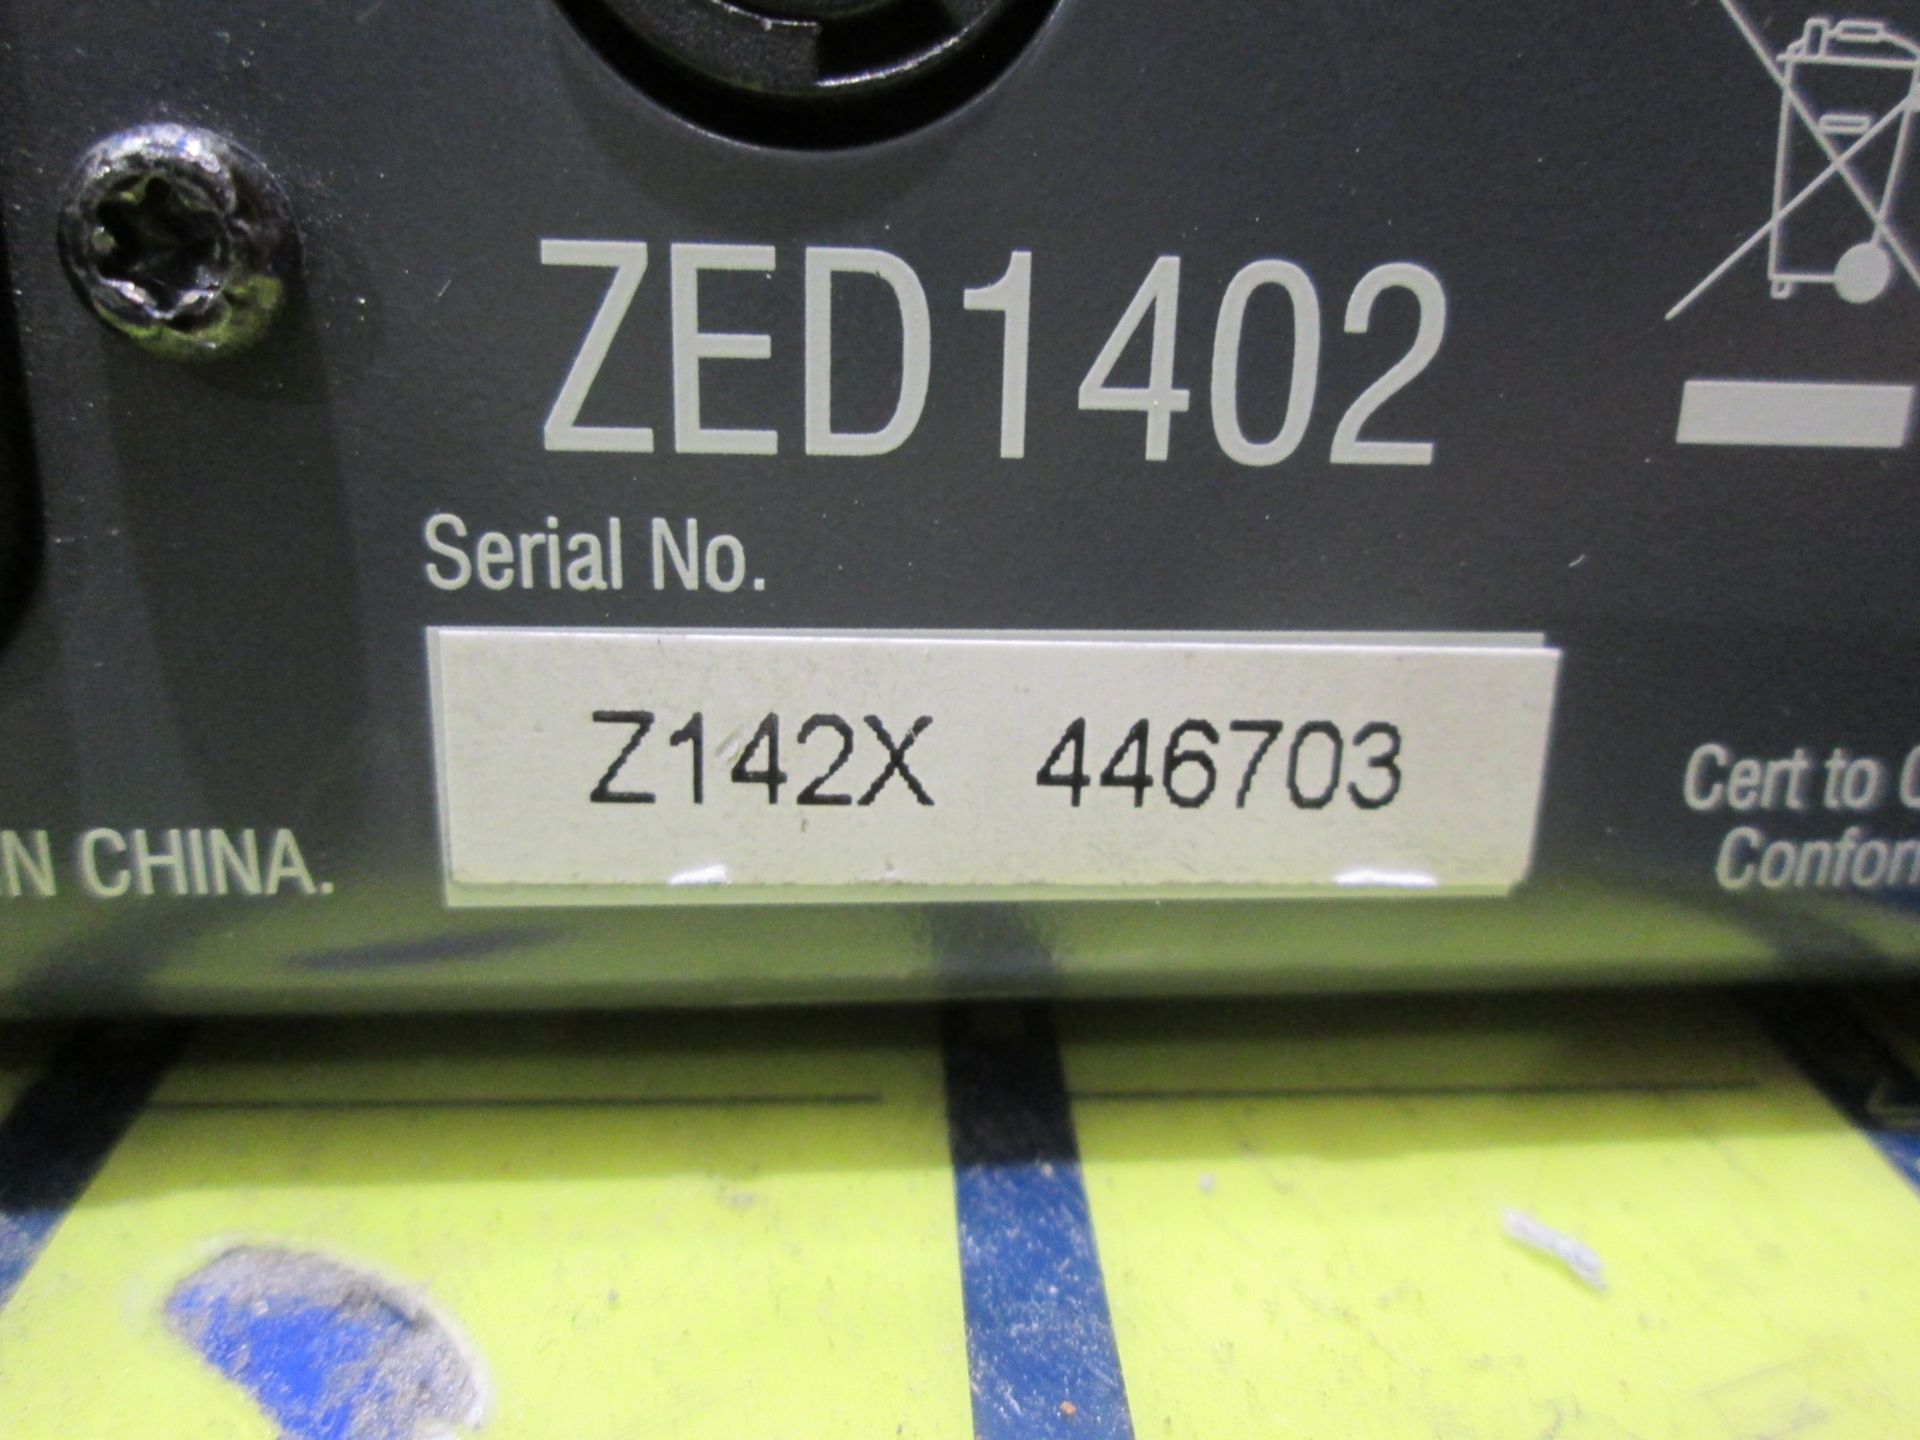 Allen & Heath Zed 14 Mixing Desk (6 x mono / 4 x stereo) S/N Z142X 446703. In flight case with - Image 5 of 6